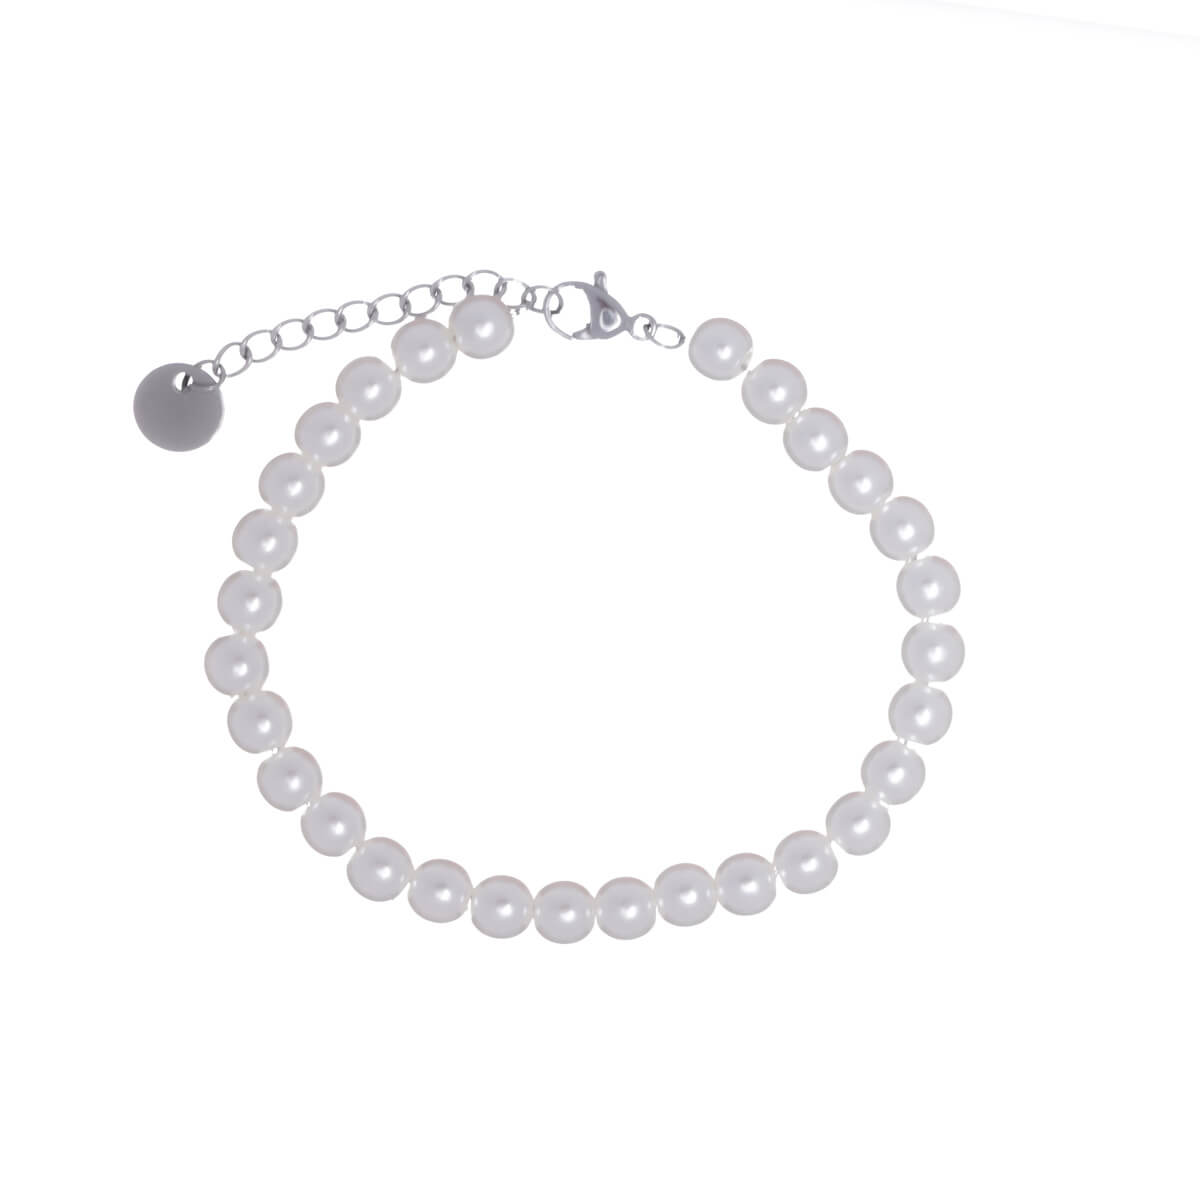 Steel bead bracelet 6mm (Steel 316L)